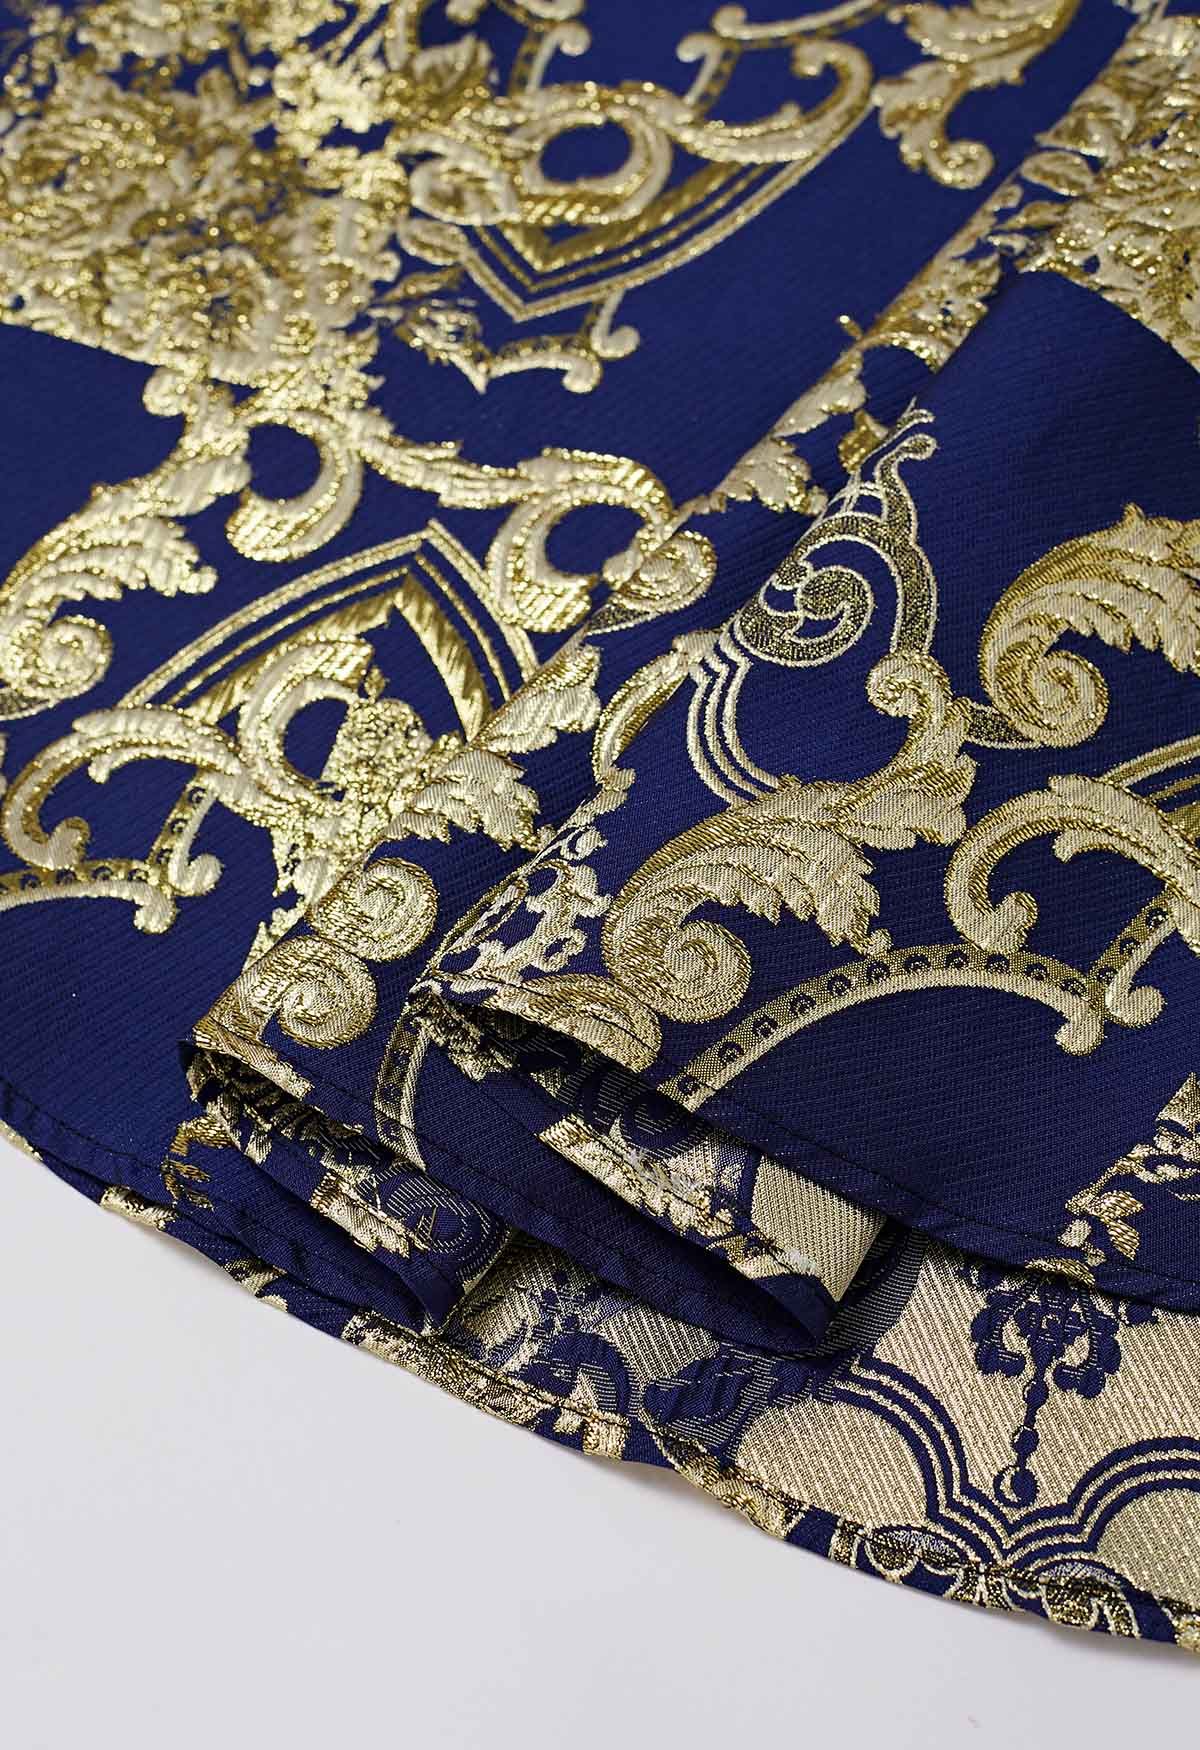 تنورة طويلة من قماش الجاكار الباروكي بخيط معدني ساحر باللون الأزرق الداكن